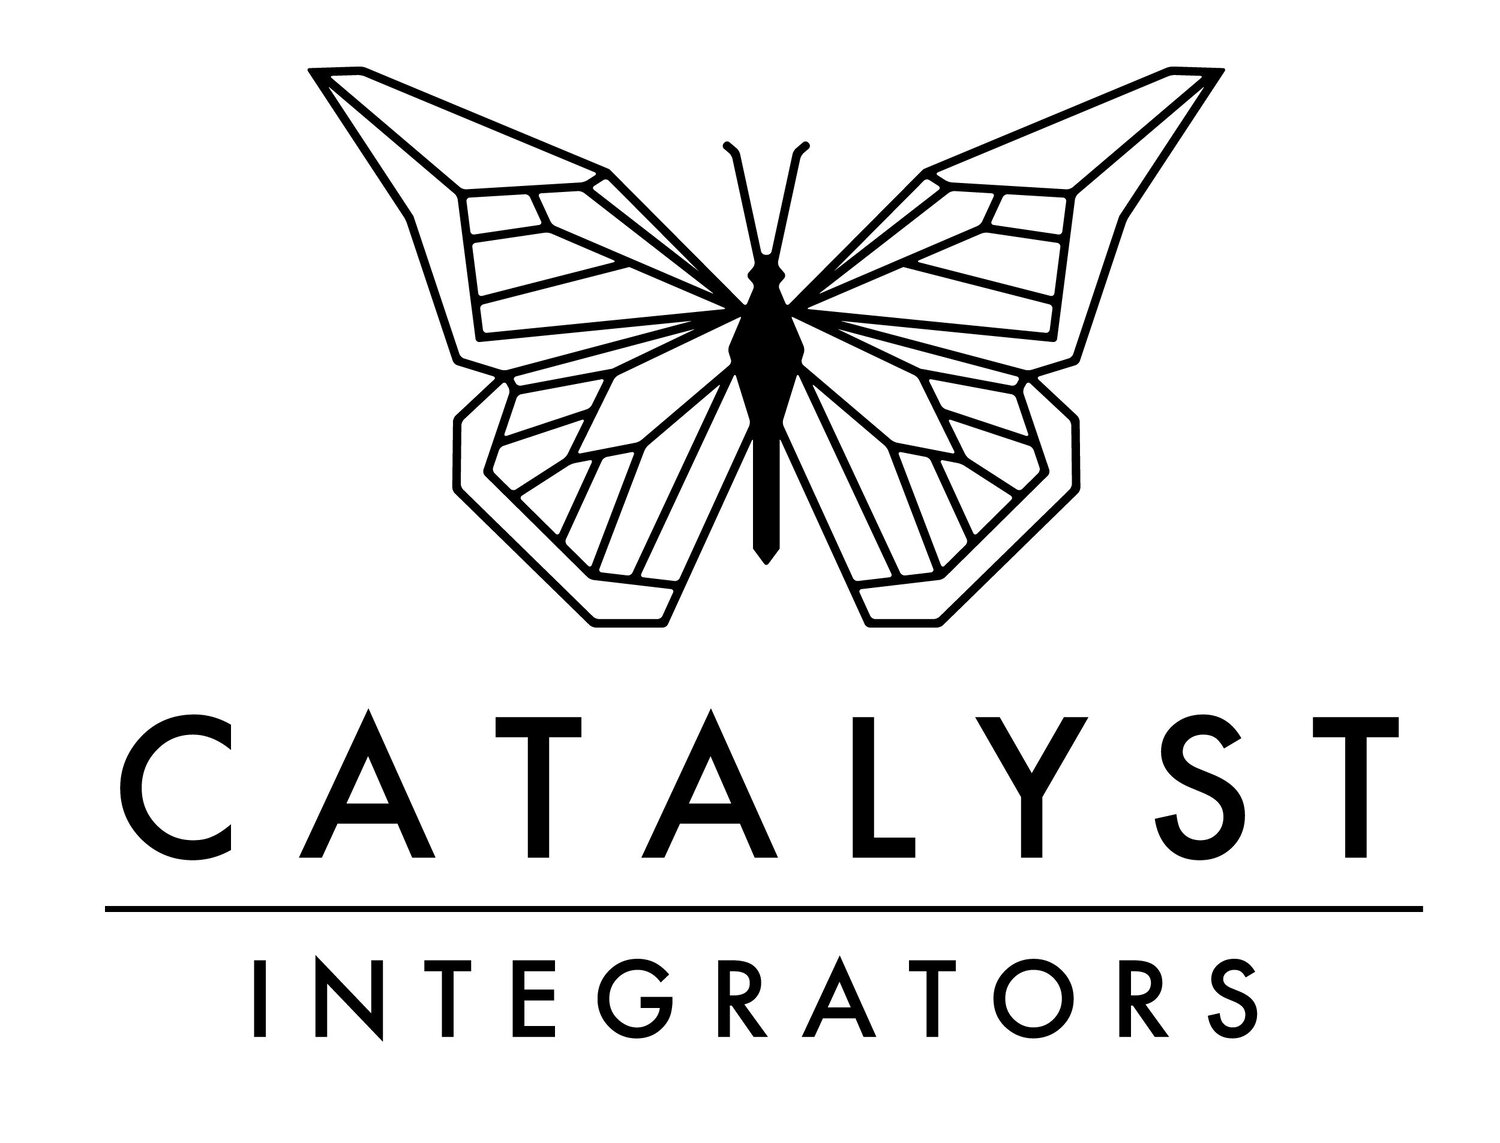 CATALYST INTEGRATORS